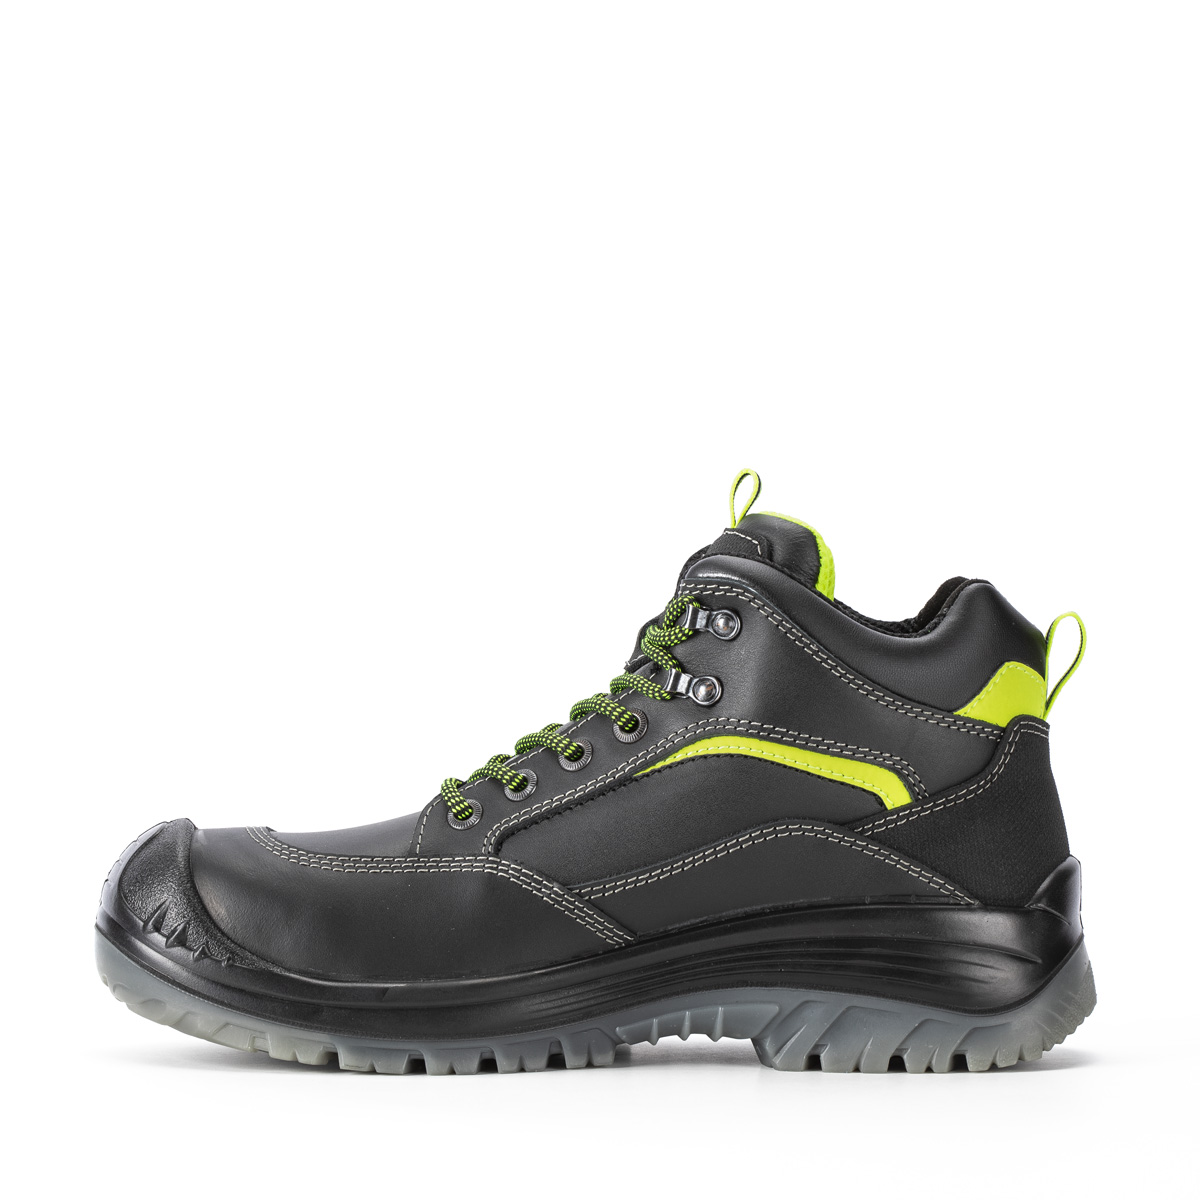 Endurance MONTAUK - Ankle boot con classe di protezione S3 SRC - Codice  modello 81154-11L Sixton Peak Safety Shoes